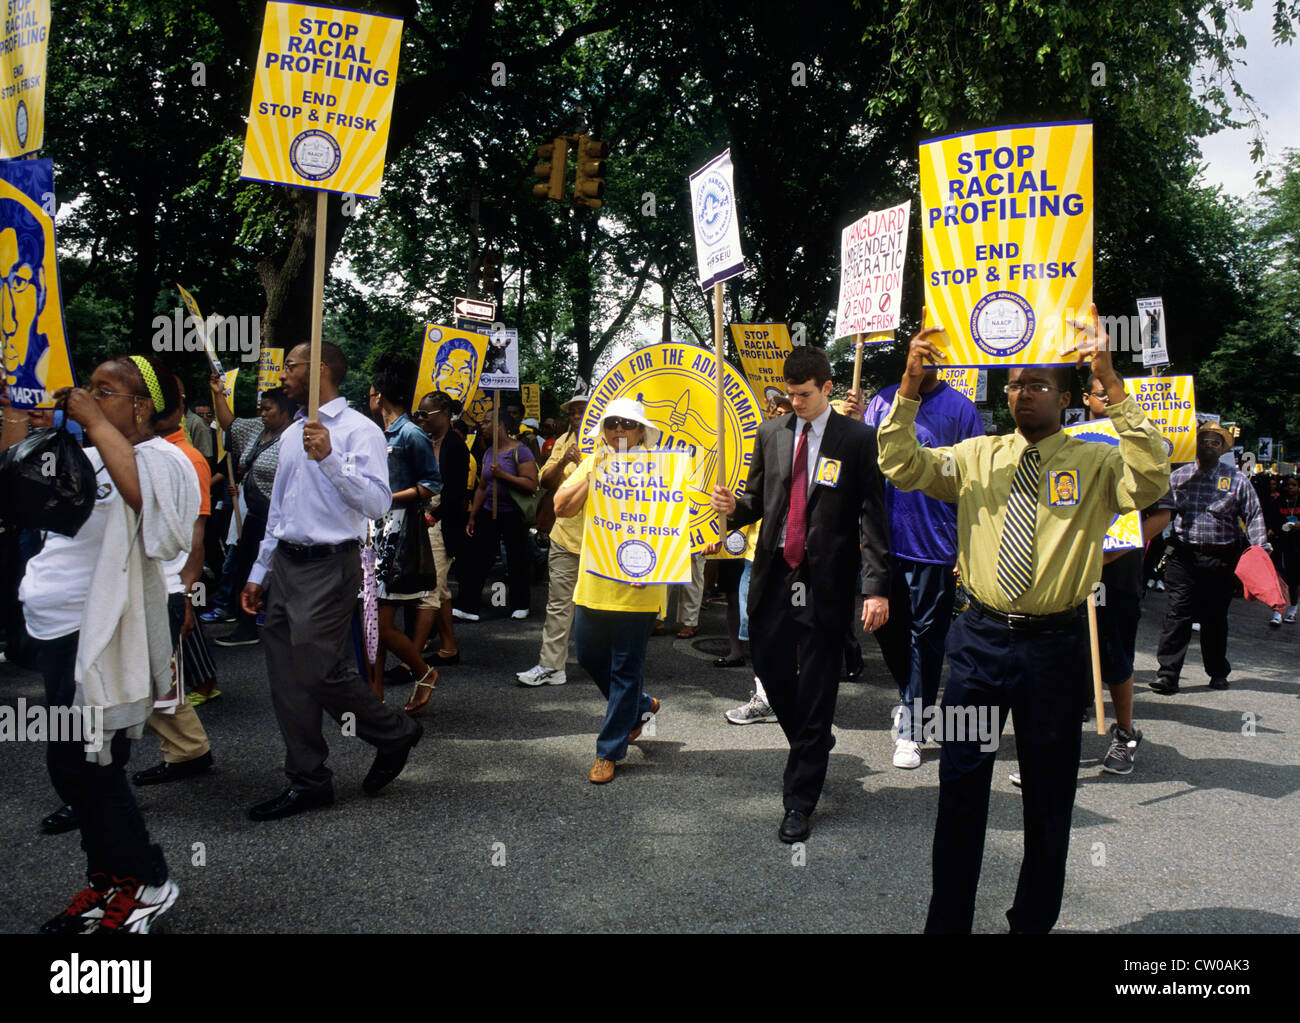 Défilé de marche silencieuse protestant contre le profilage racial et la loi Stop and FLisk.Droits de l'homme.New York, New York City, Fifth Avenue, États-Unis Banque D'Images